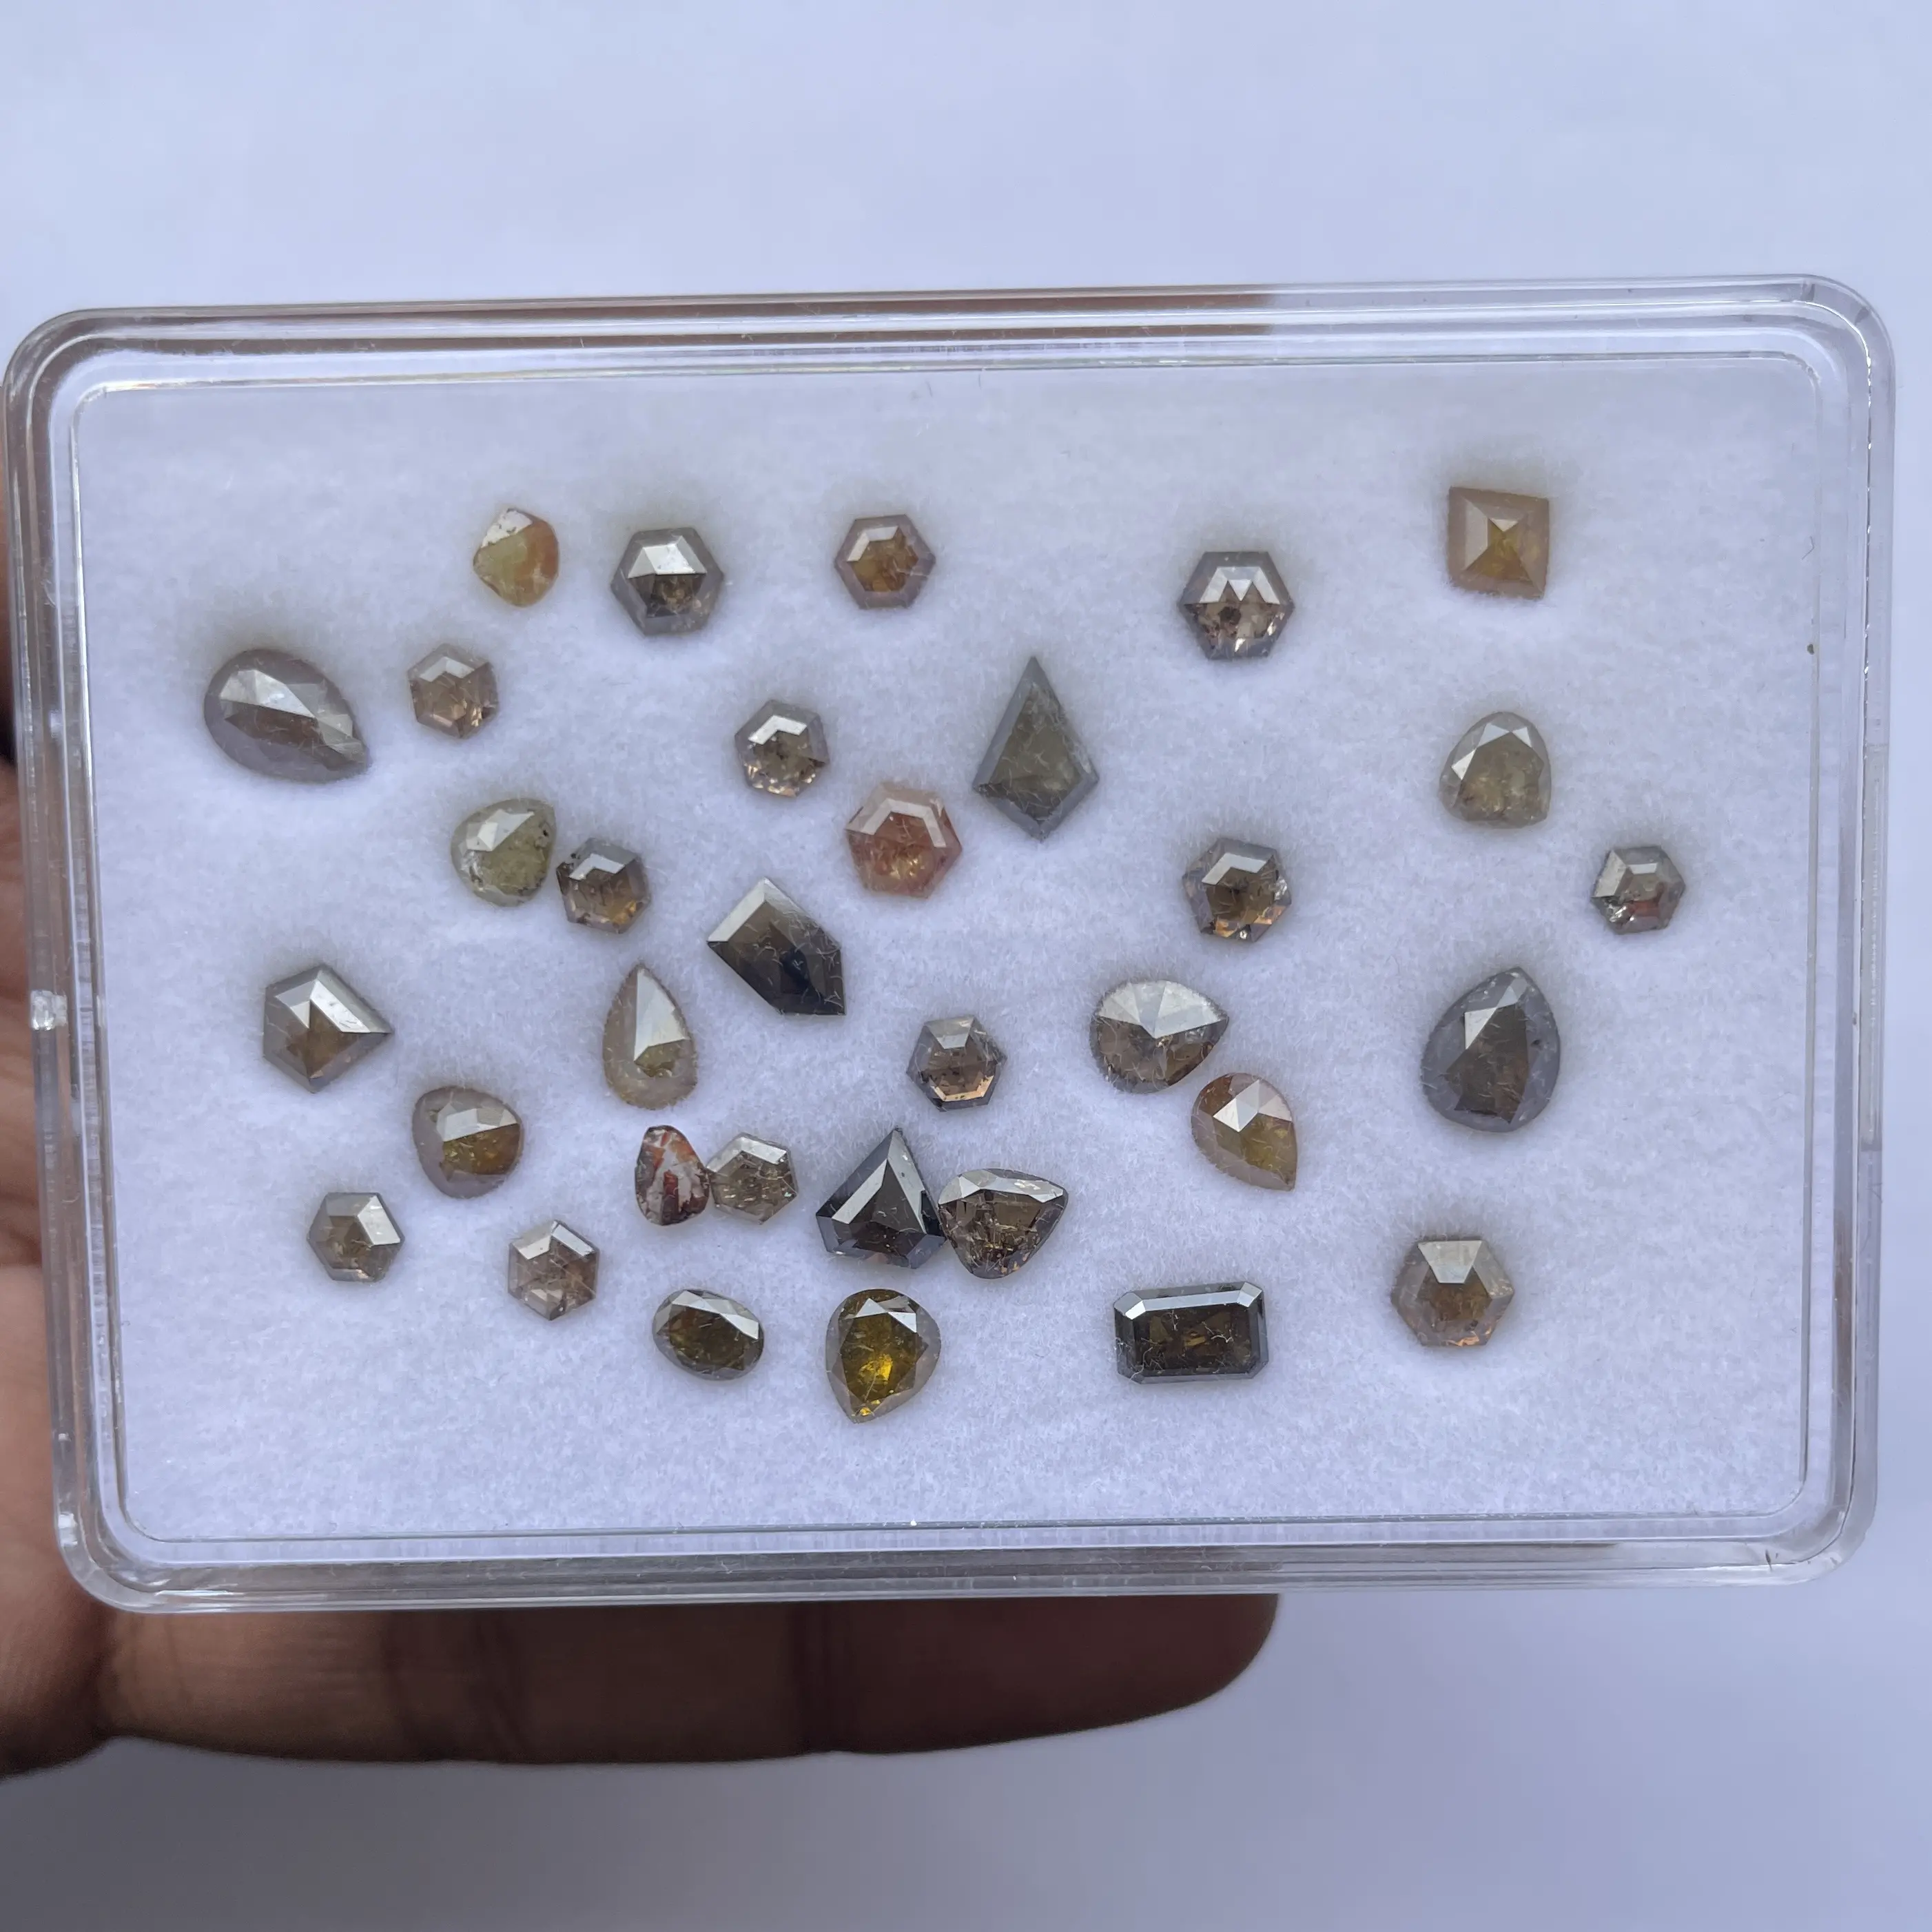 Pedras preciosas soltas em forma de mistura de pedras de diamante de sal e pimenta naturais do fornecedor no atacado, melhor preço, comprar online Alibaba Índia